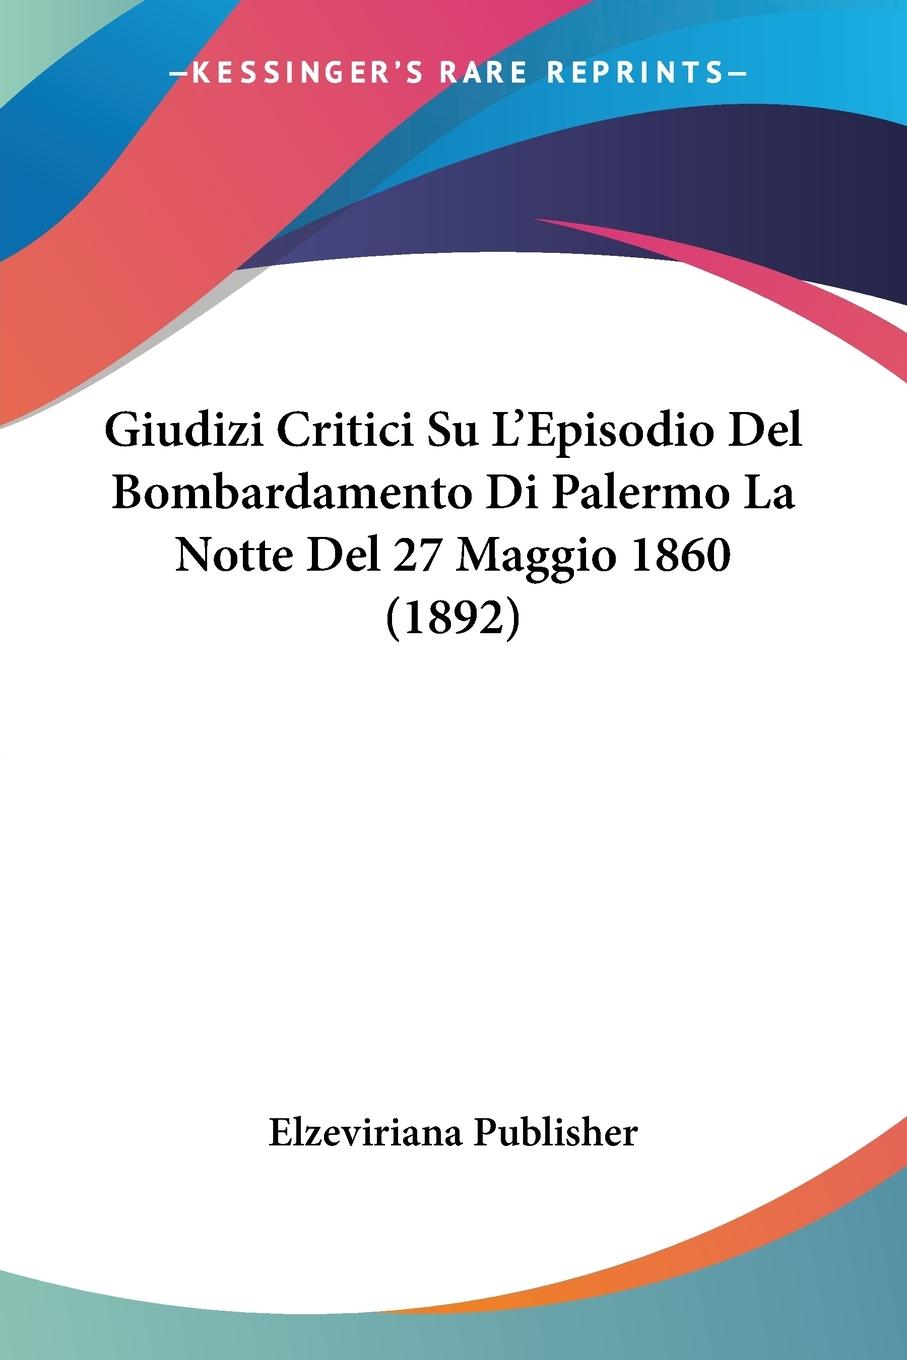 Giudizi Critici Su L Episodio Del Bombardamento Di Palermo La Notte Del 27 Maggio 1860 (1892) - Elzeviriana Publisher